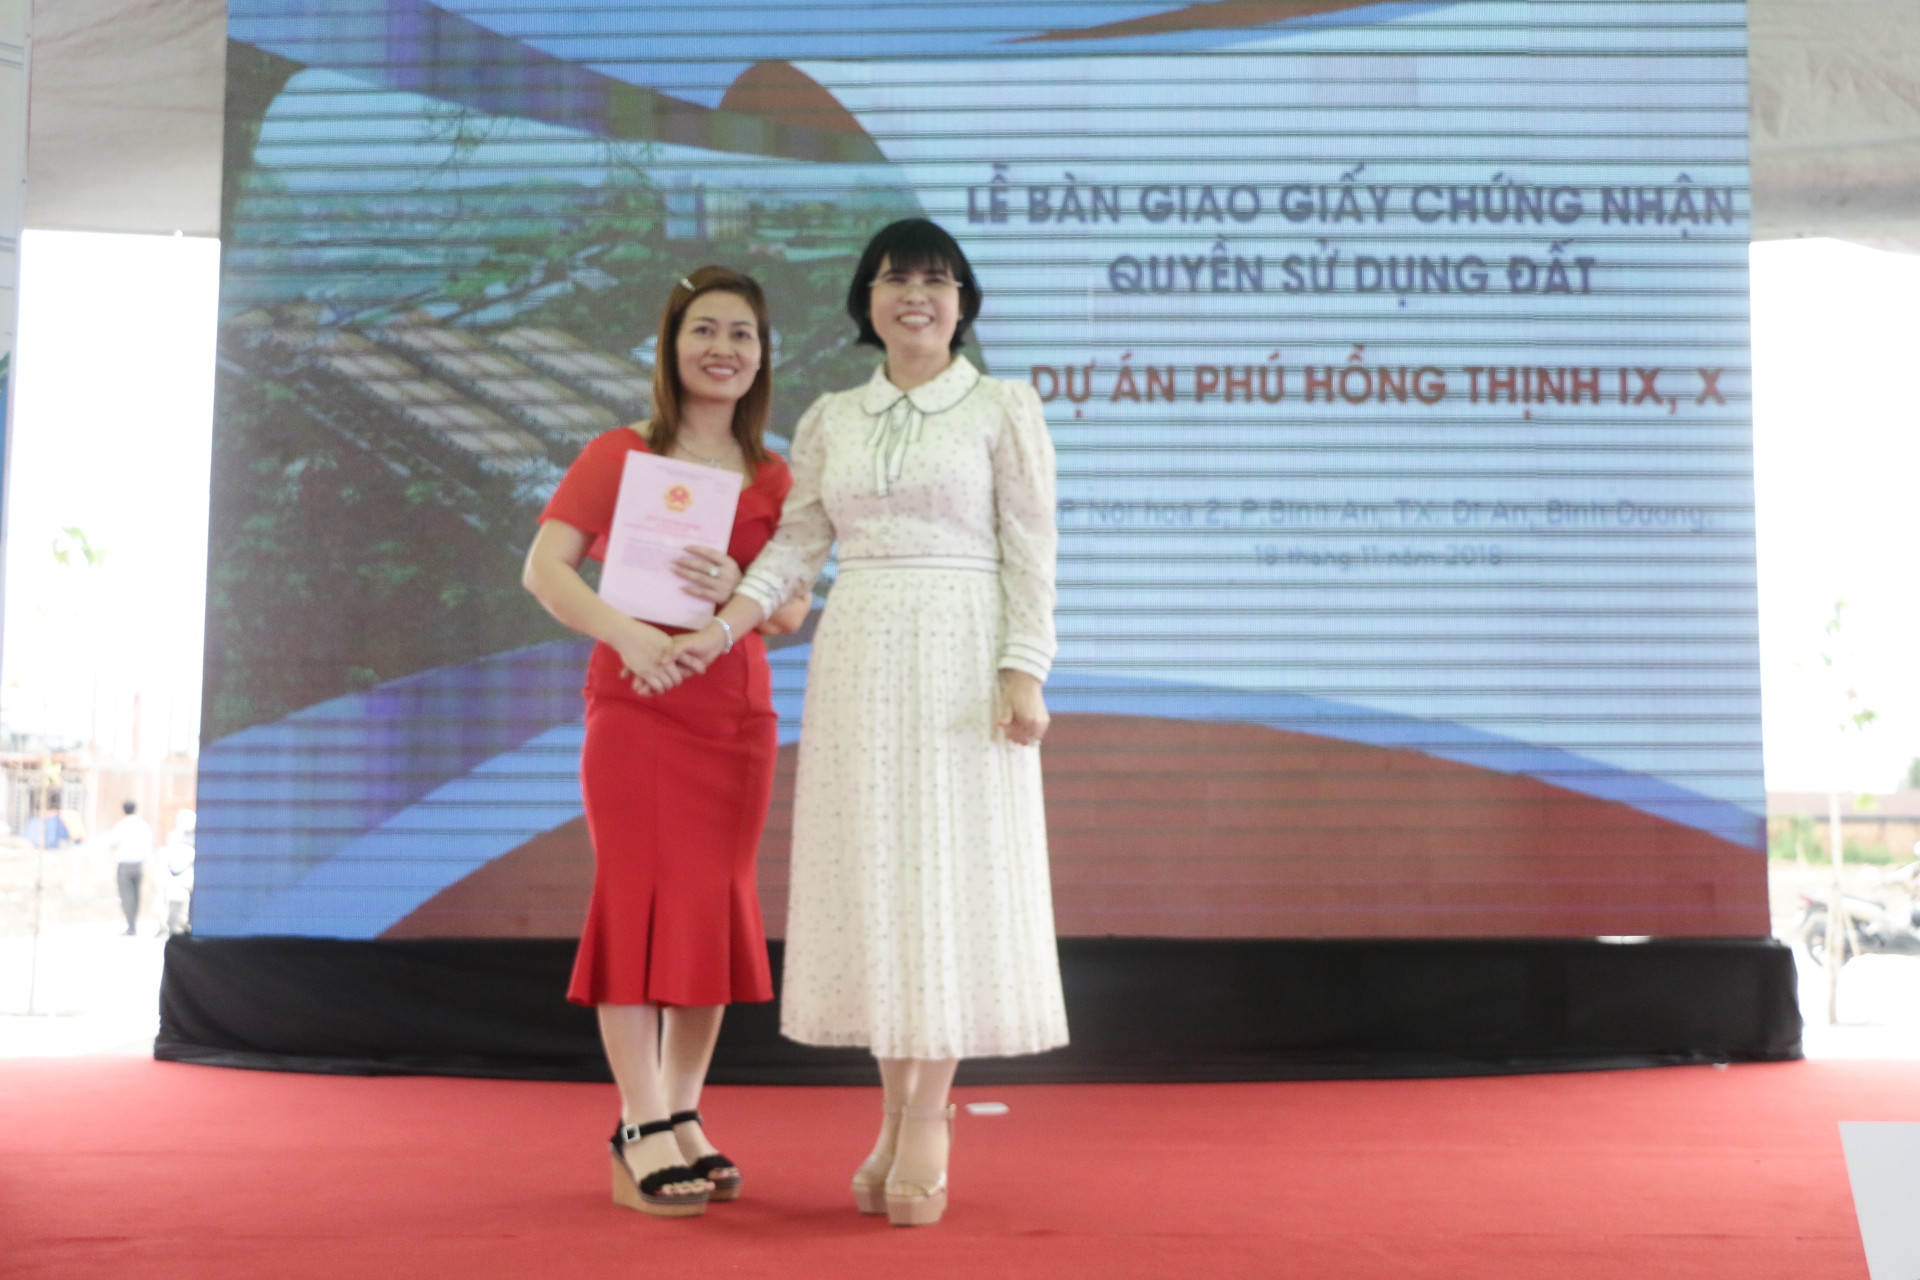 Công ty TNHH bất động sản Phú Hồng Thịnh: Khẳng định vị thế trên thị trường bất động sản